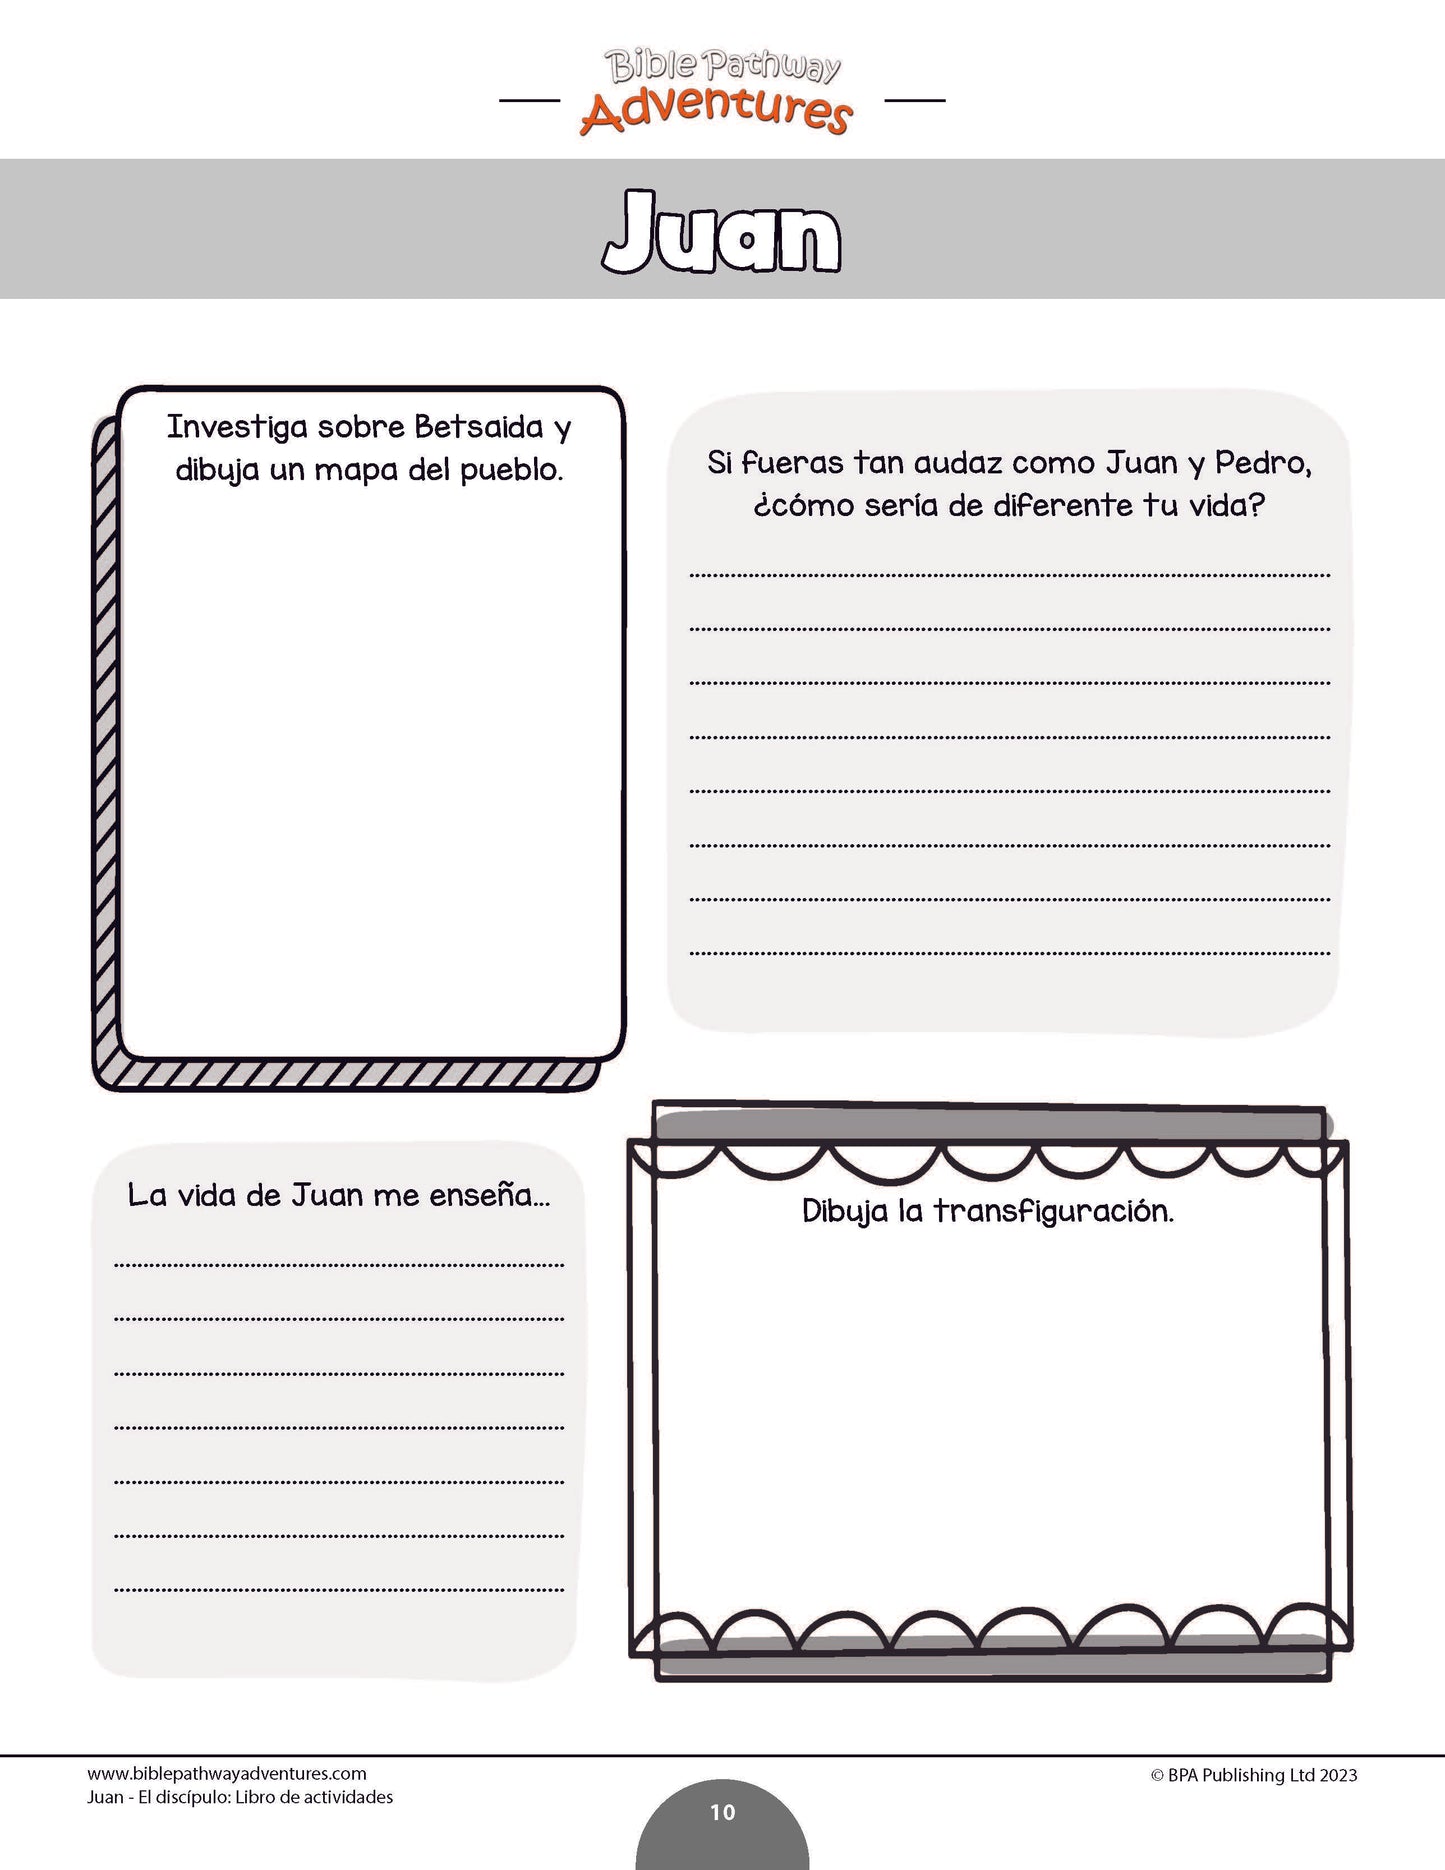 Juan - El discípulo: Libro de actividades